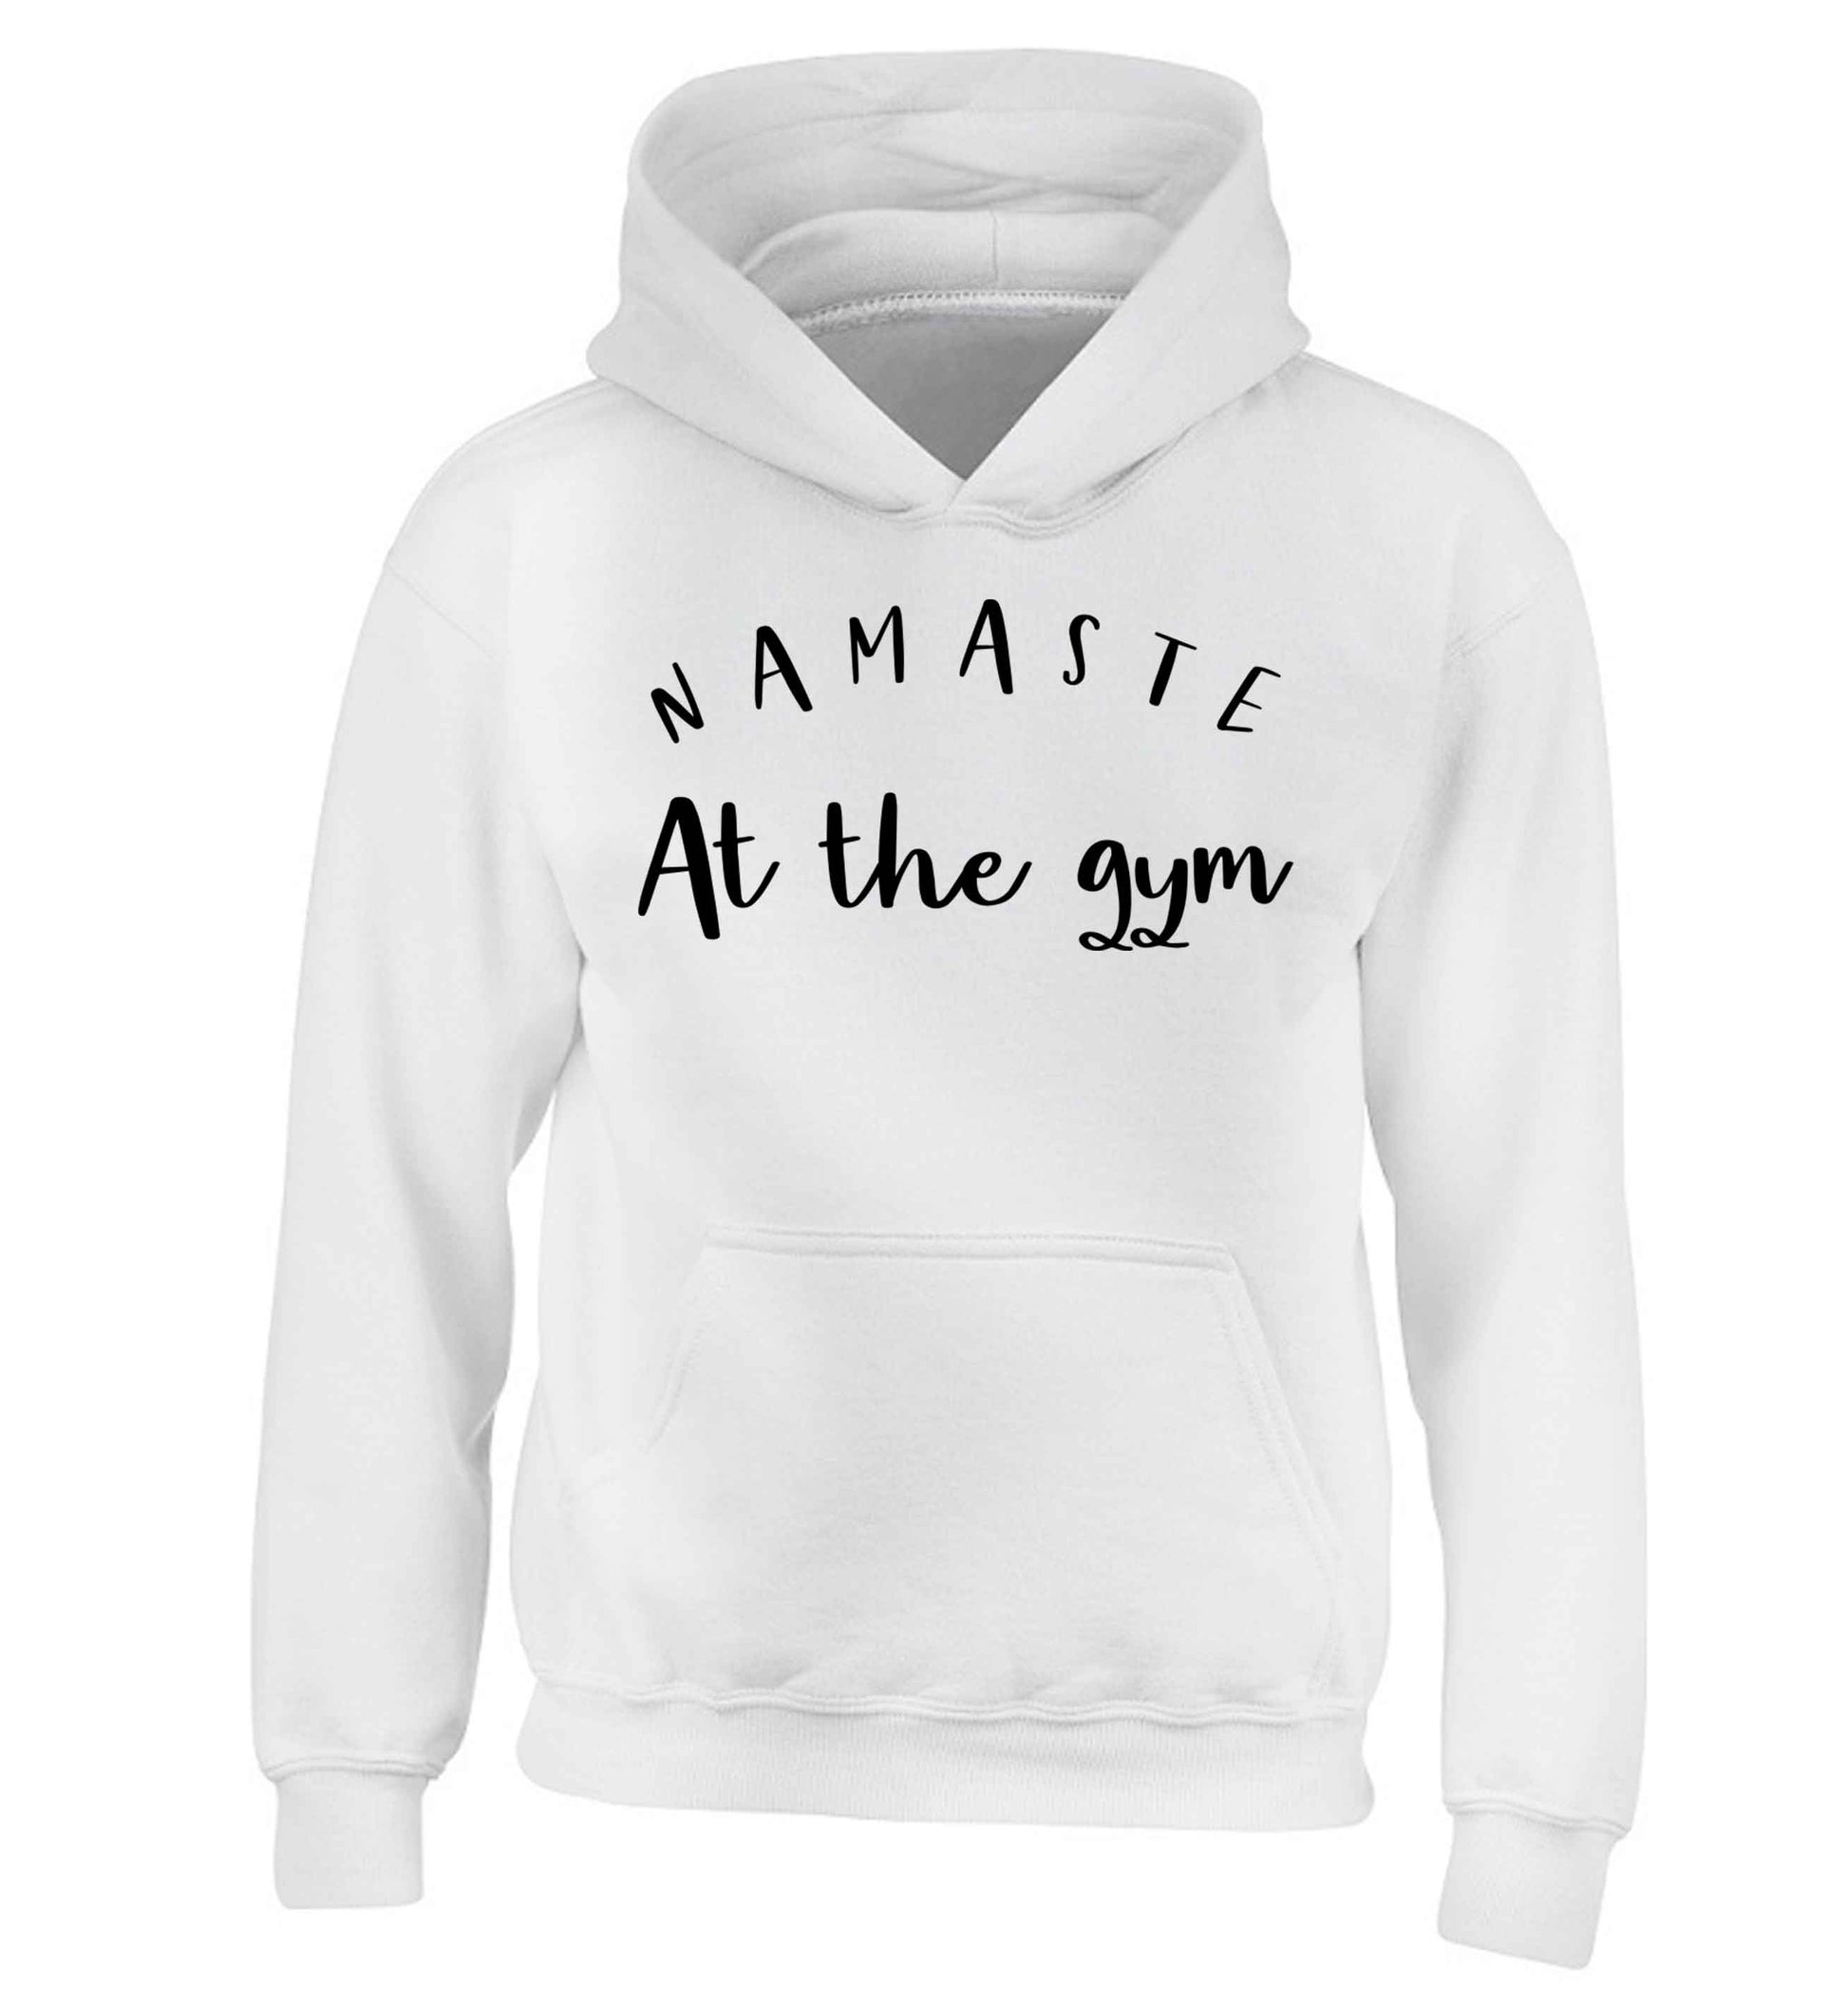 Namaste at the gym children's white hoodie 12-13 Years